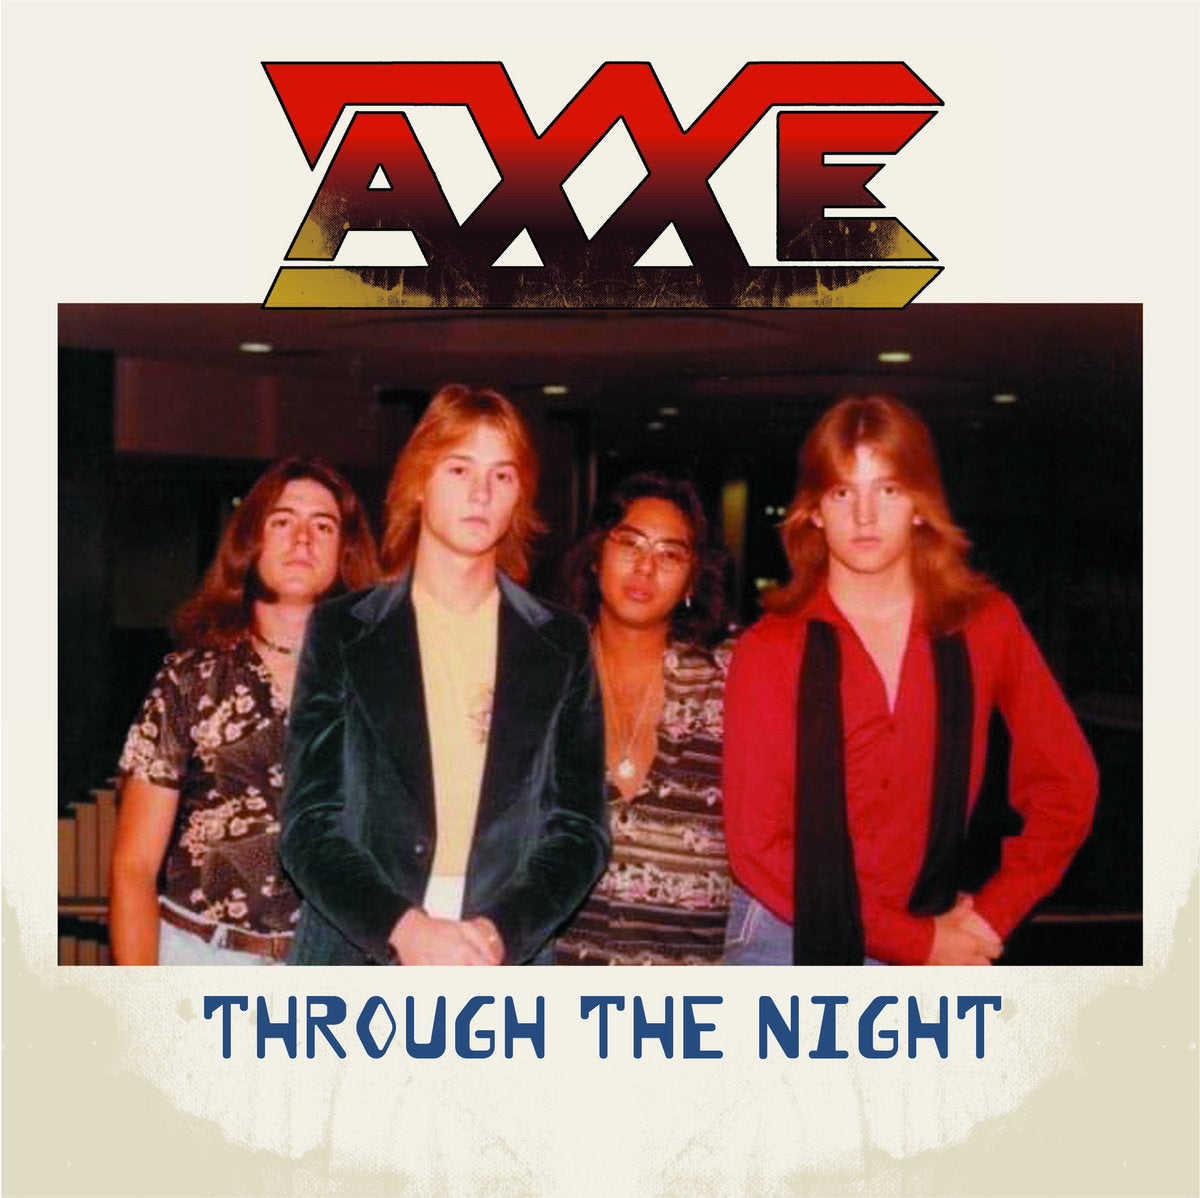 AXXE - Through The Night / Rock Away The City - 7" - Green Vinyl